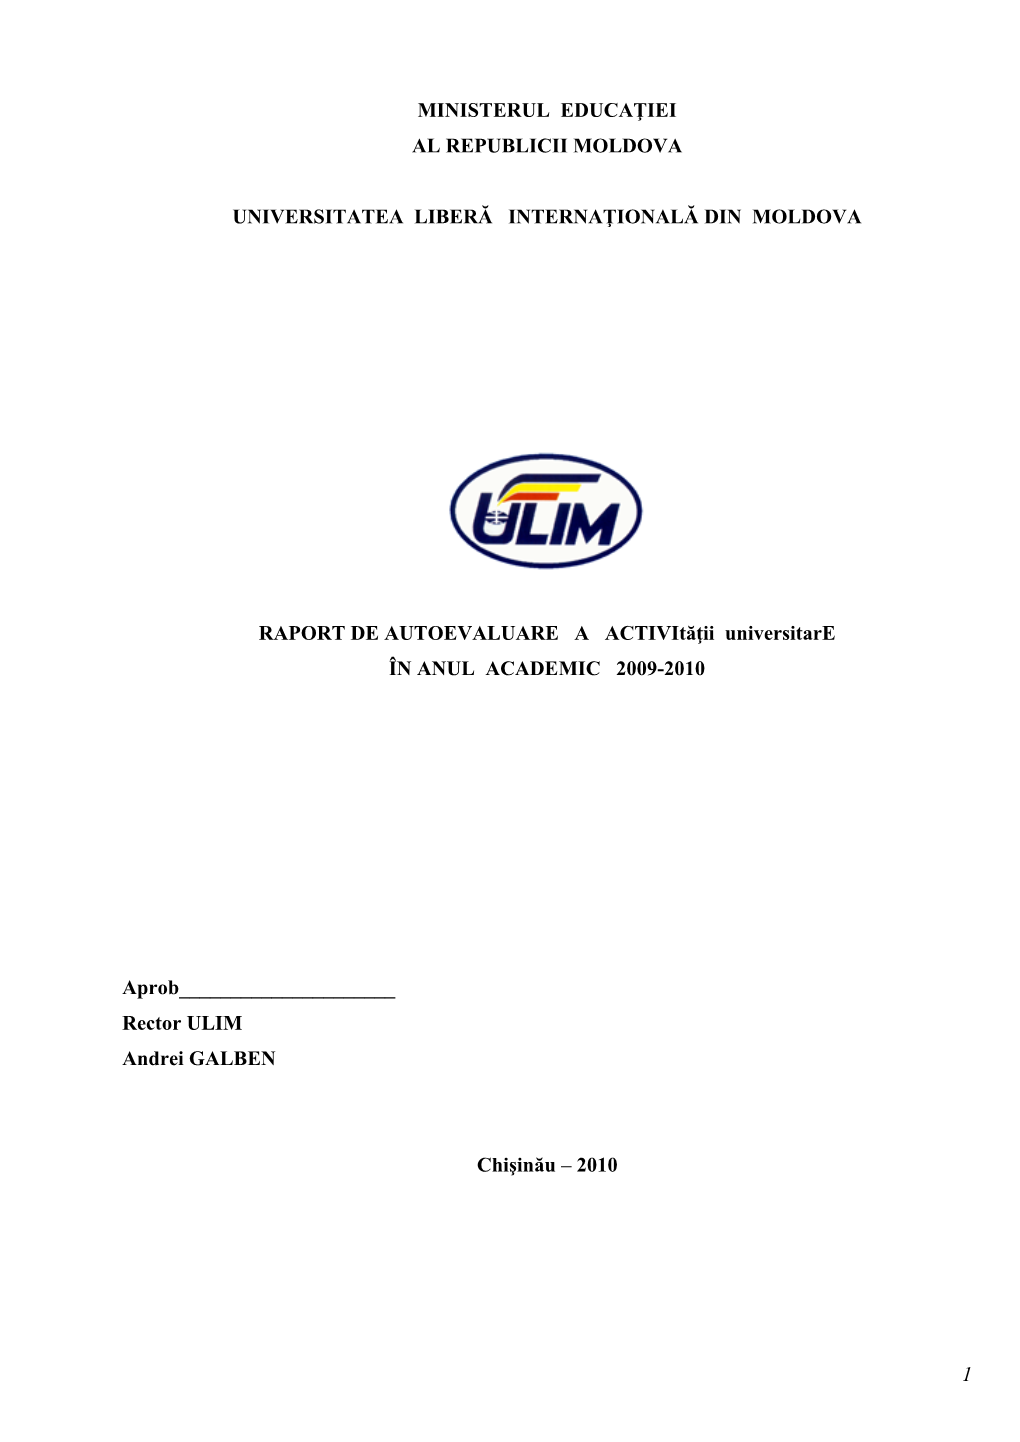 Raport Ulim 2009-2010